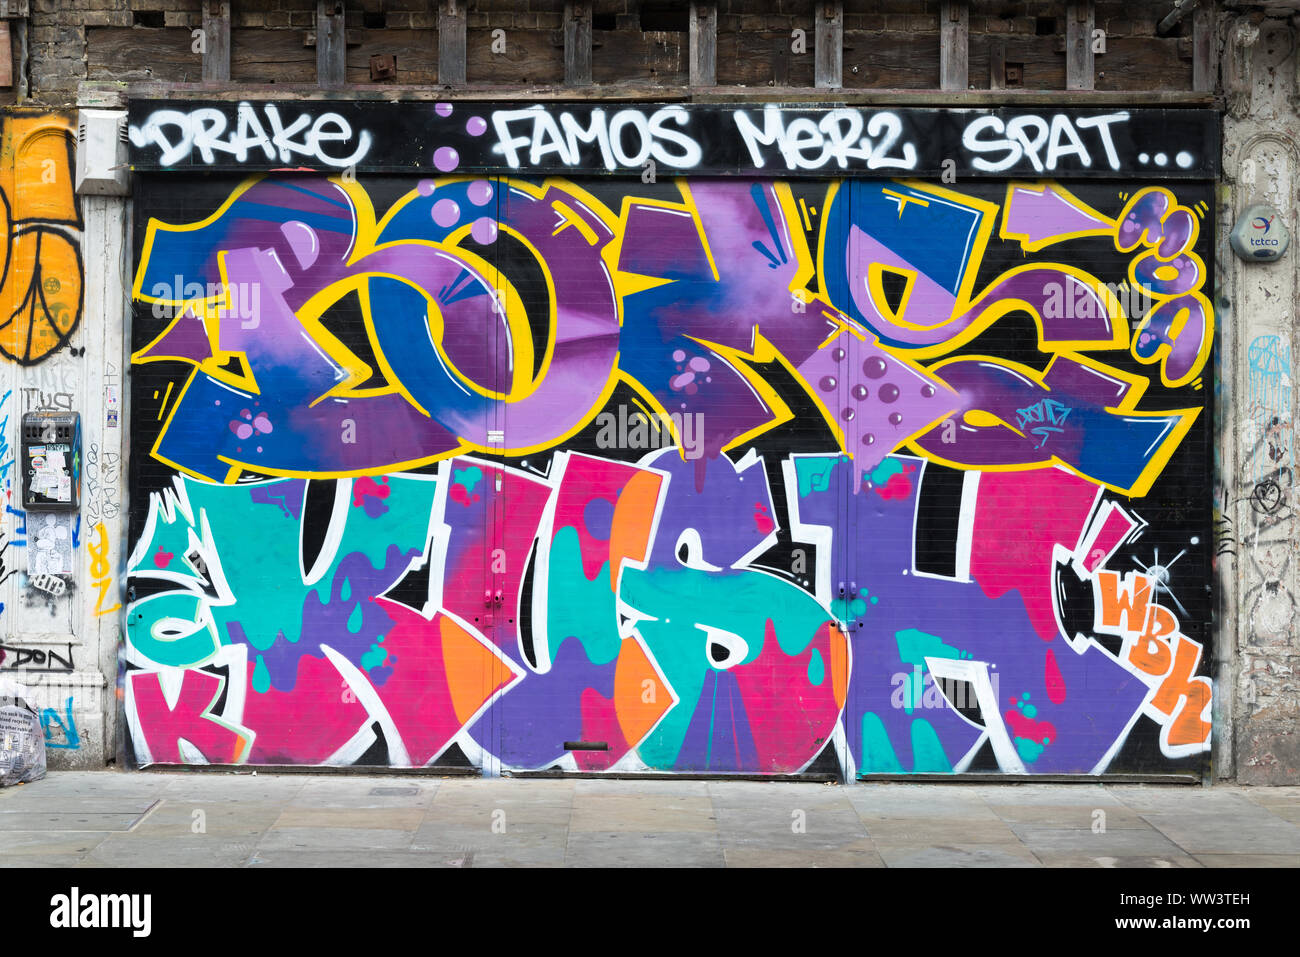 Les graffitis, Shoreditch, London, UK Banque D'Images